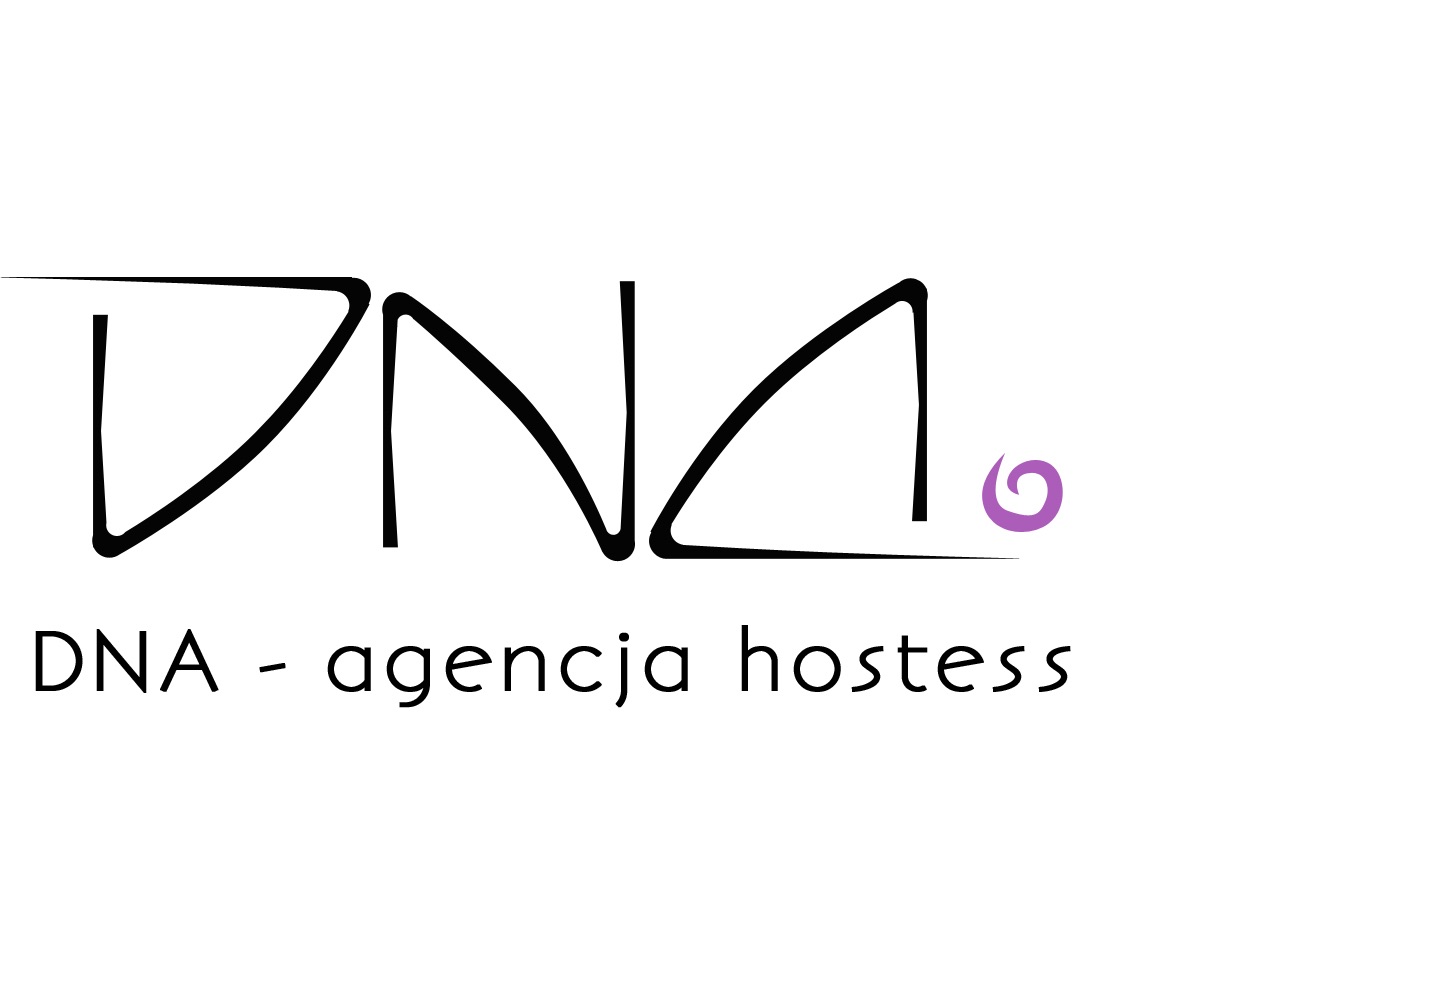 Agencja hostess DNA